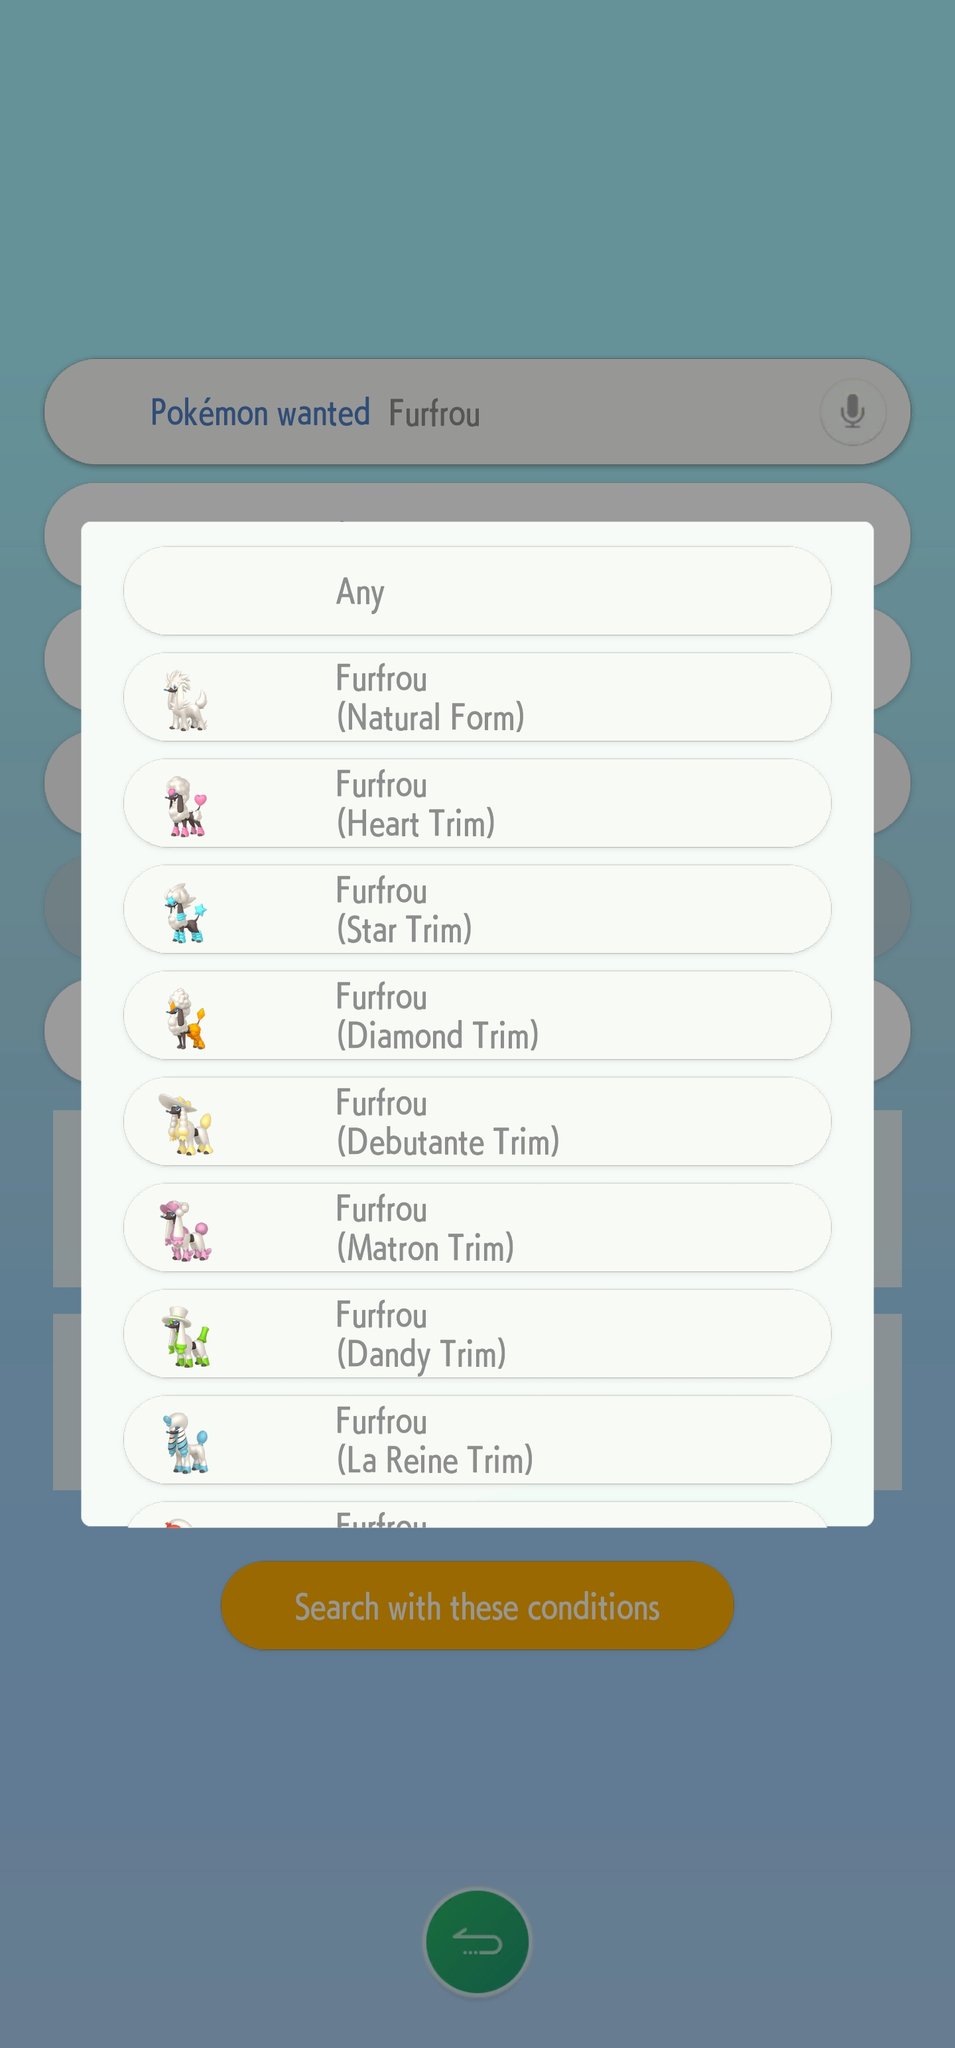 Furfrou regresará en Pokémon Legends: Z-A 16